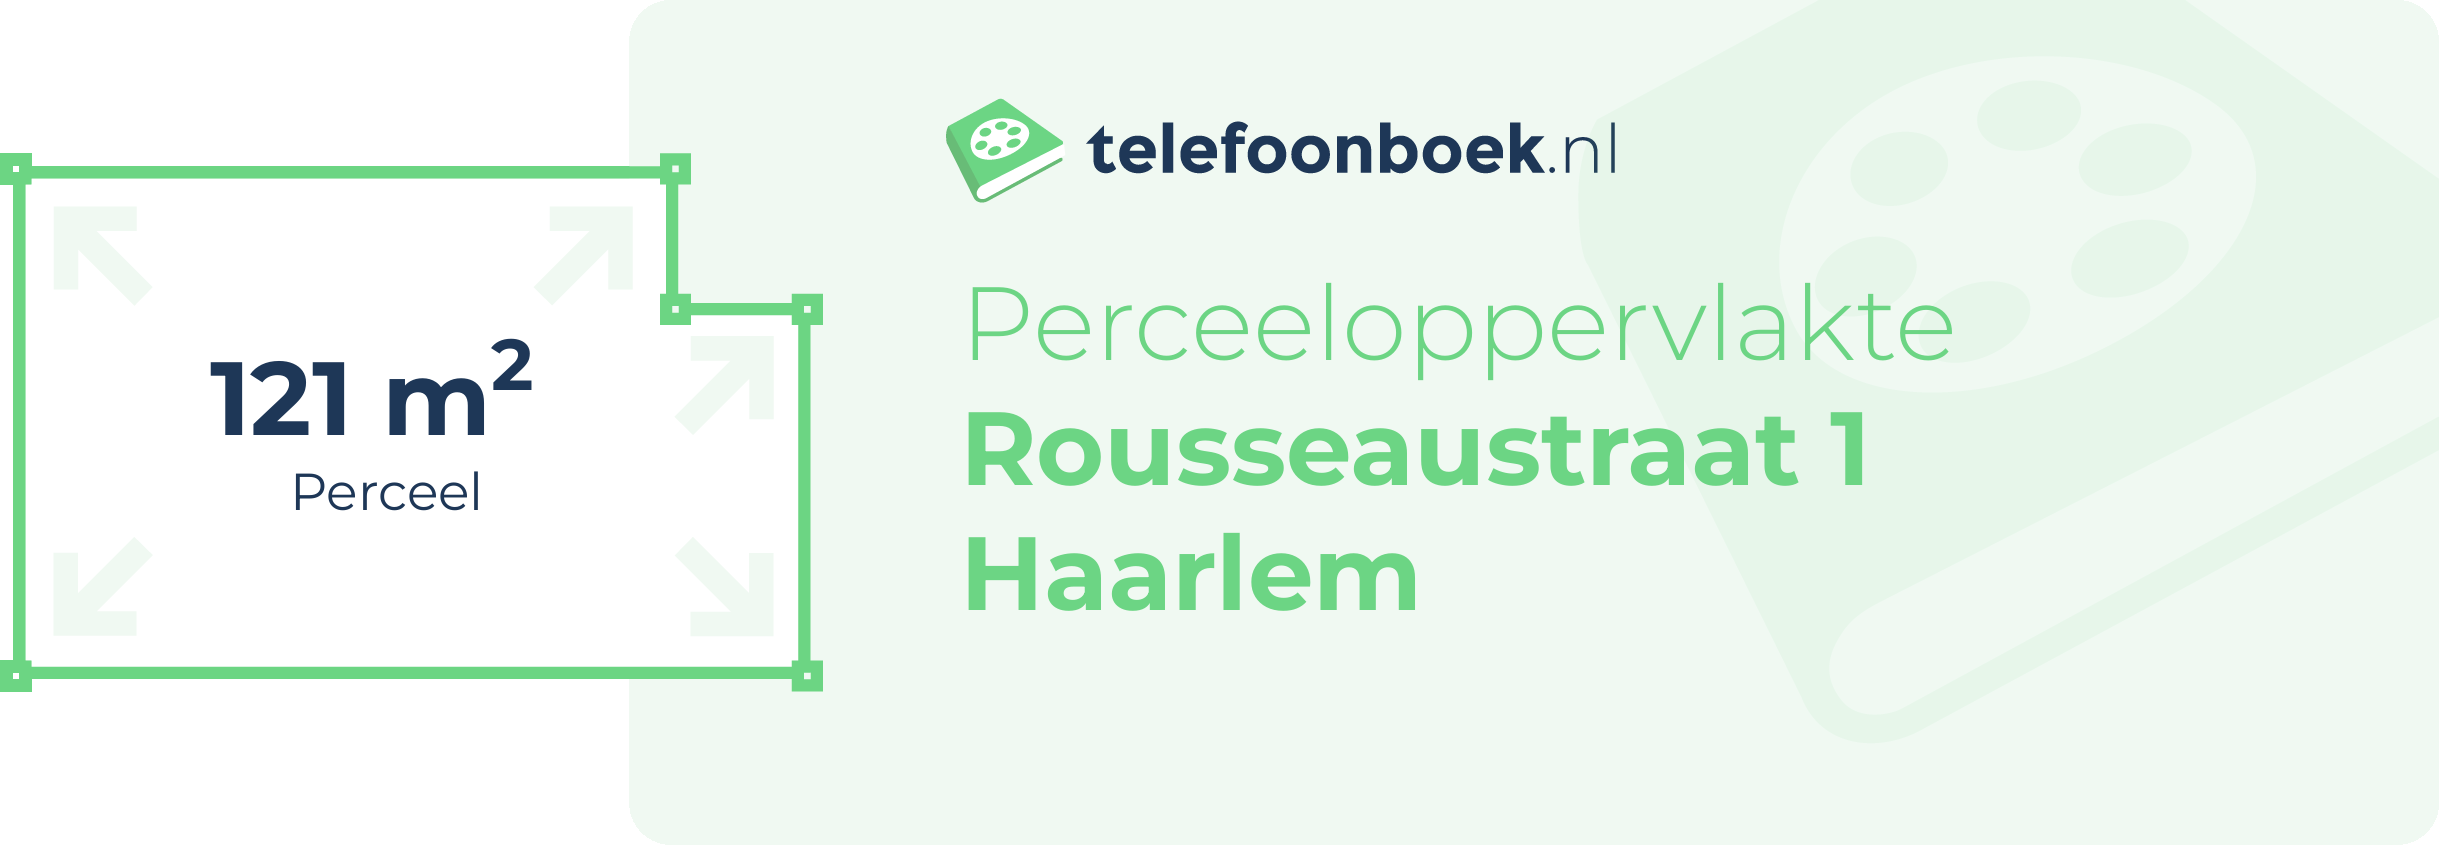 Perceeloppervlakte Rousseaustraat 1 Haarlem